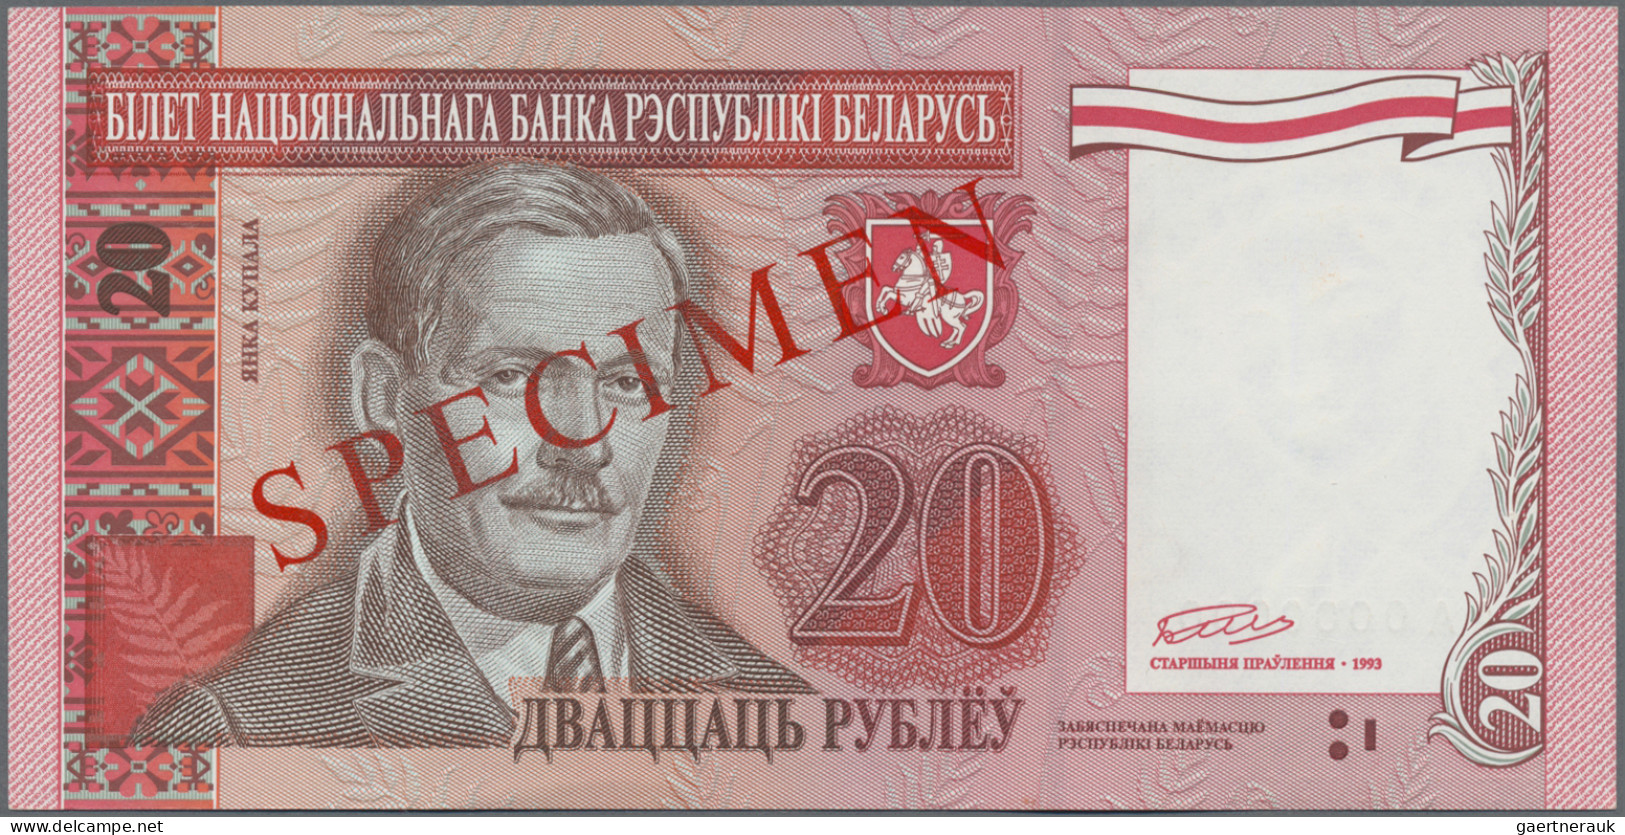 Belarus: National Bank of Belarus, set with 6 unissued SPECIMEN 1, 5, 10, 20, 50